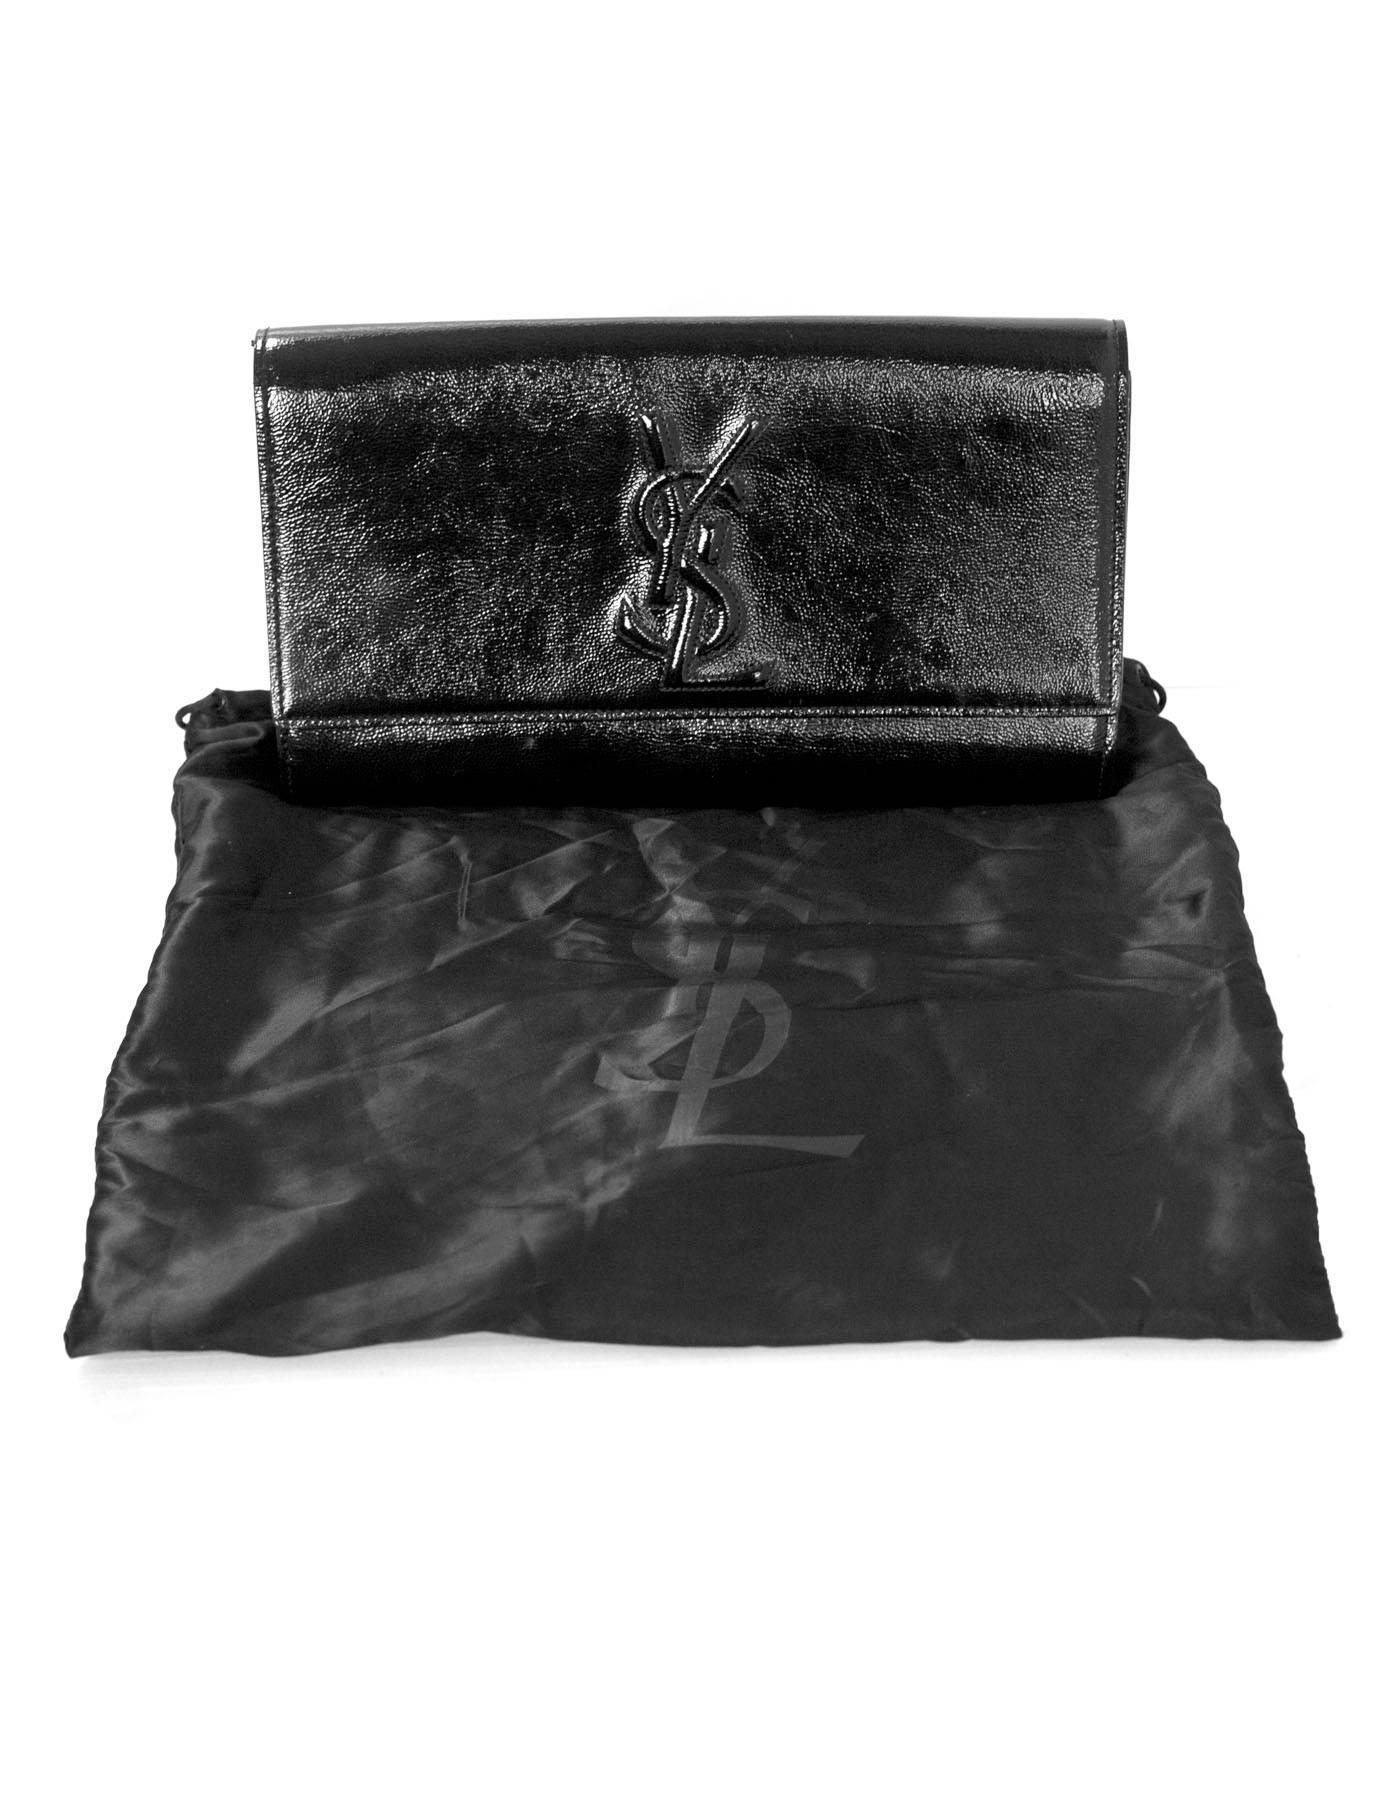 Yves Saint Laurent Black Patent Leather Belle De Jour Clutch Bag 2